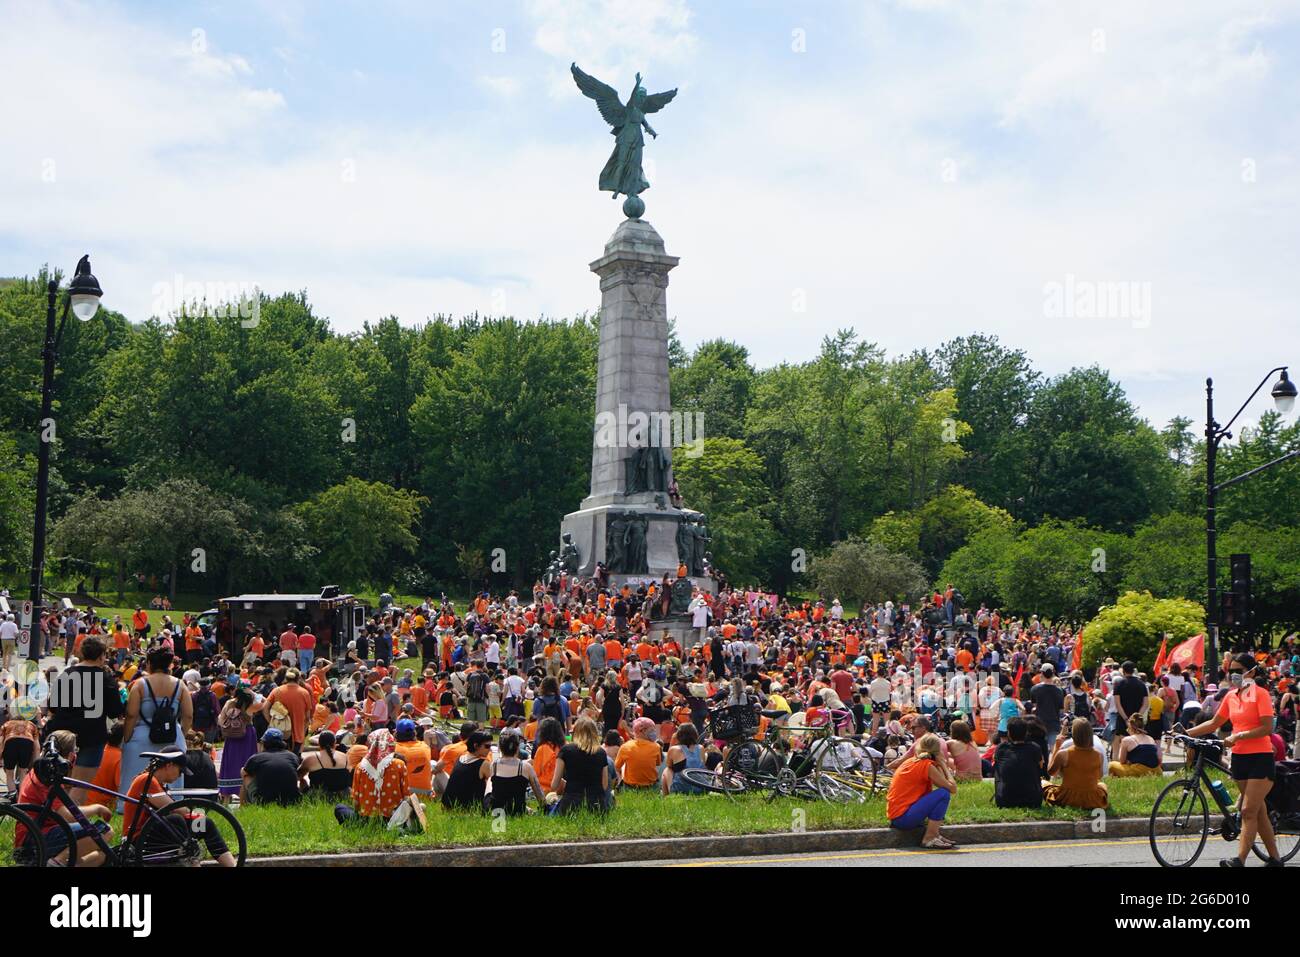 Montreal, Quebec, Kanada, 1. Juli 2021.große Menschenmenge versammelte sich, um der indigenen Kultur Respekt zu zollen.Mario Beauregard/Alamy News Stockfoto